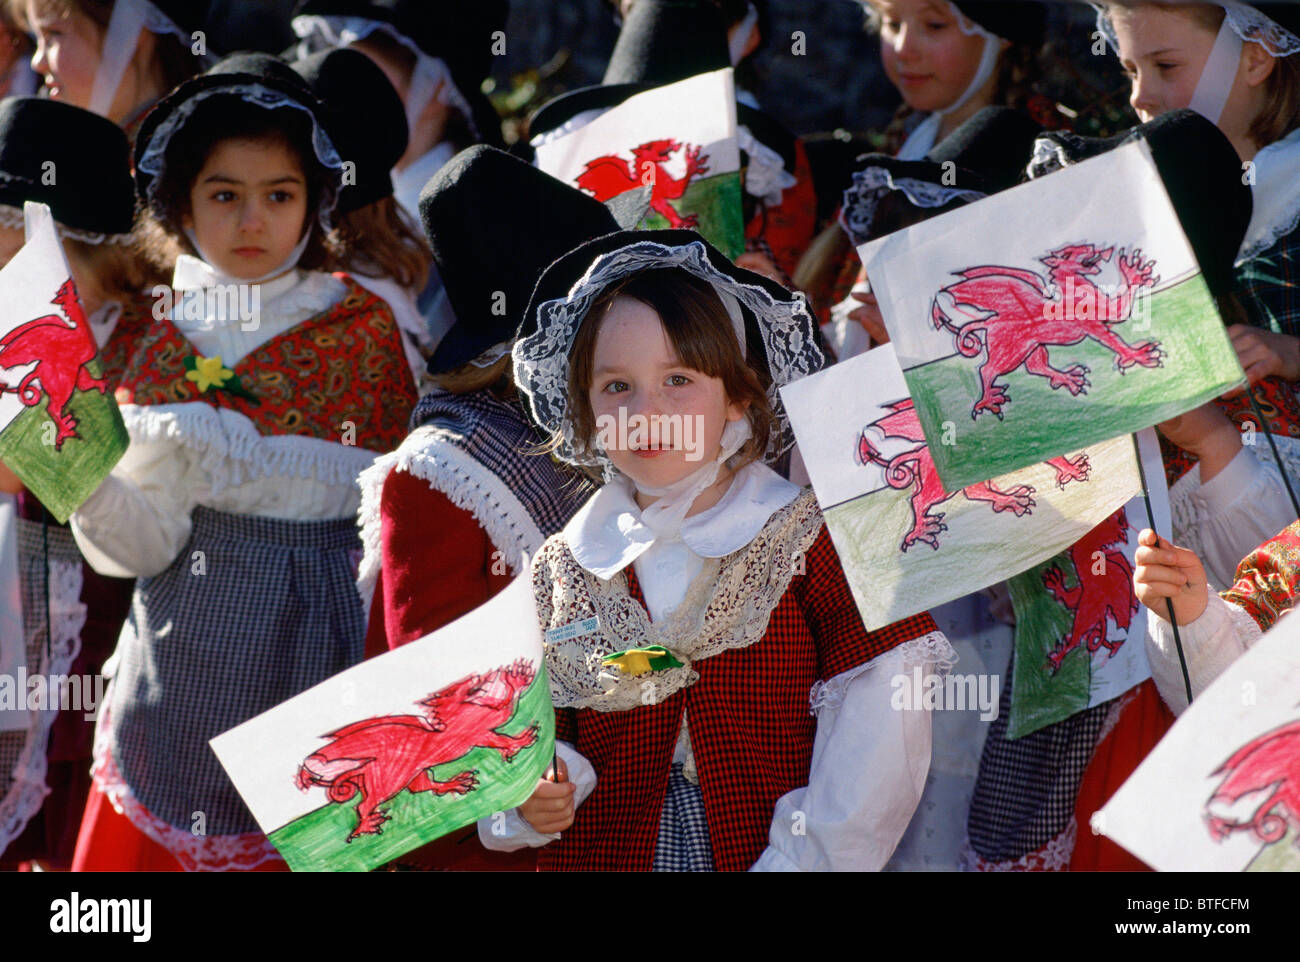 Welsh enfants habillés en costume national avec dragon rouge drapeaux gallois pour St David's day celebration, Pays de Galles, Royaume-Uni Banque D'Images